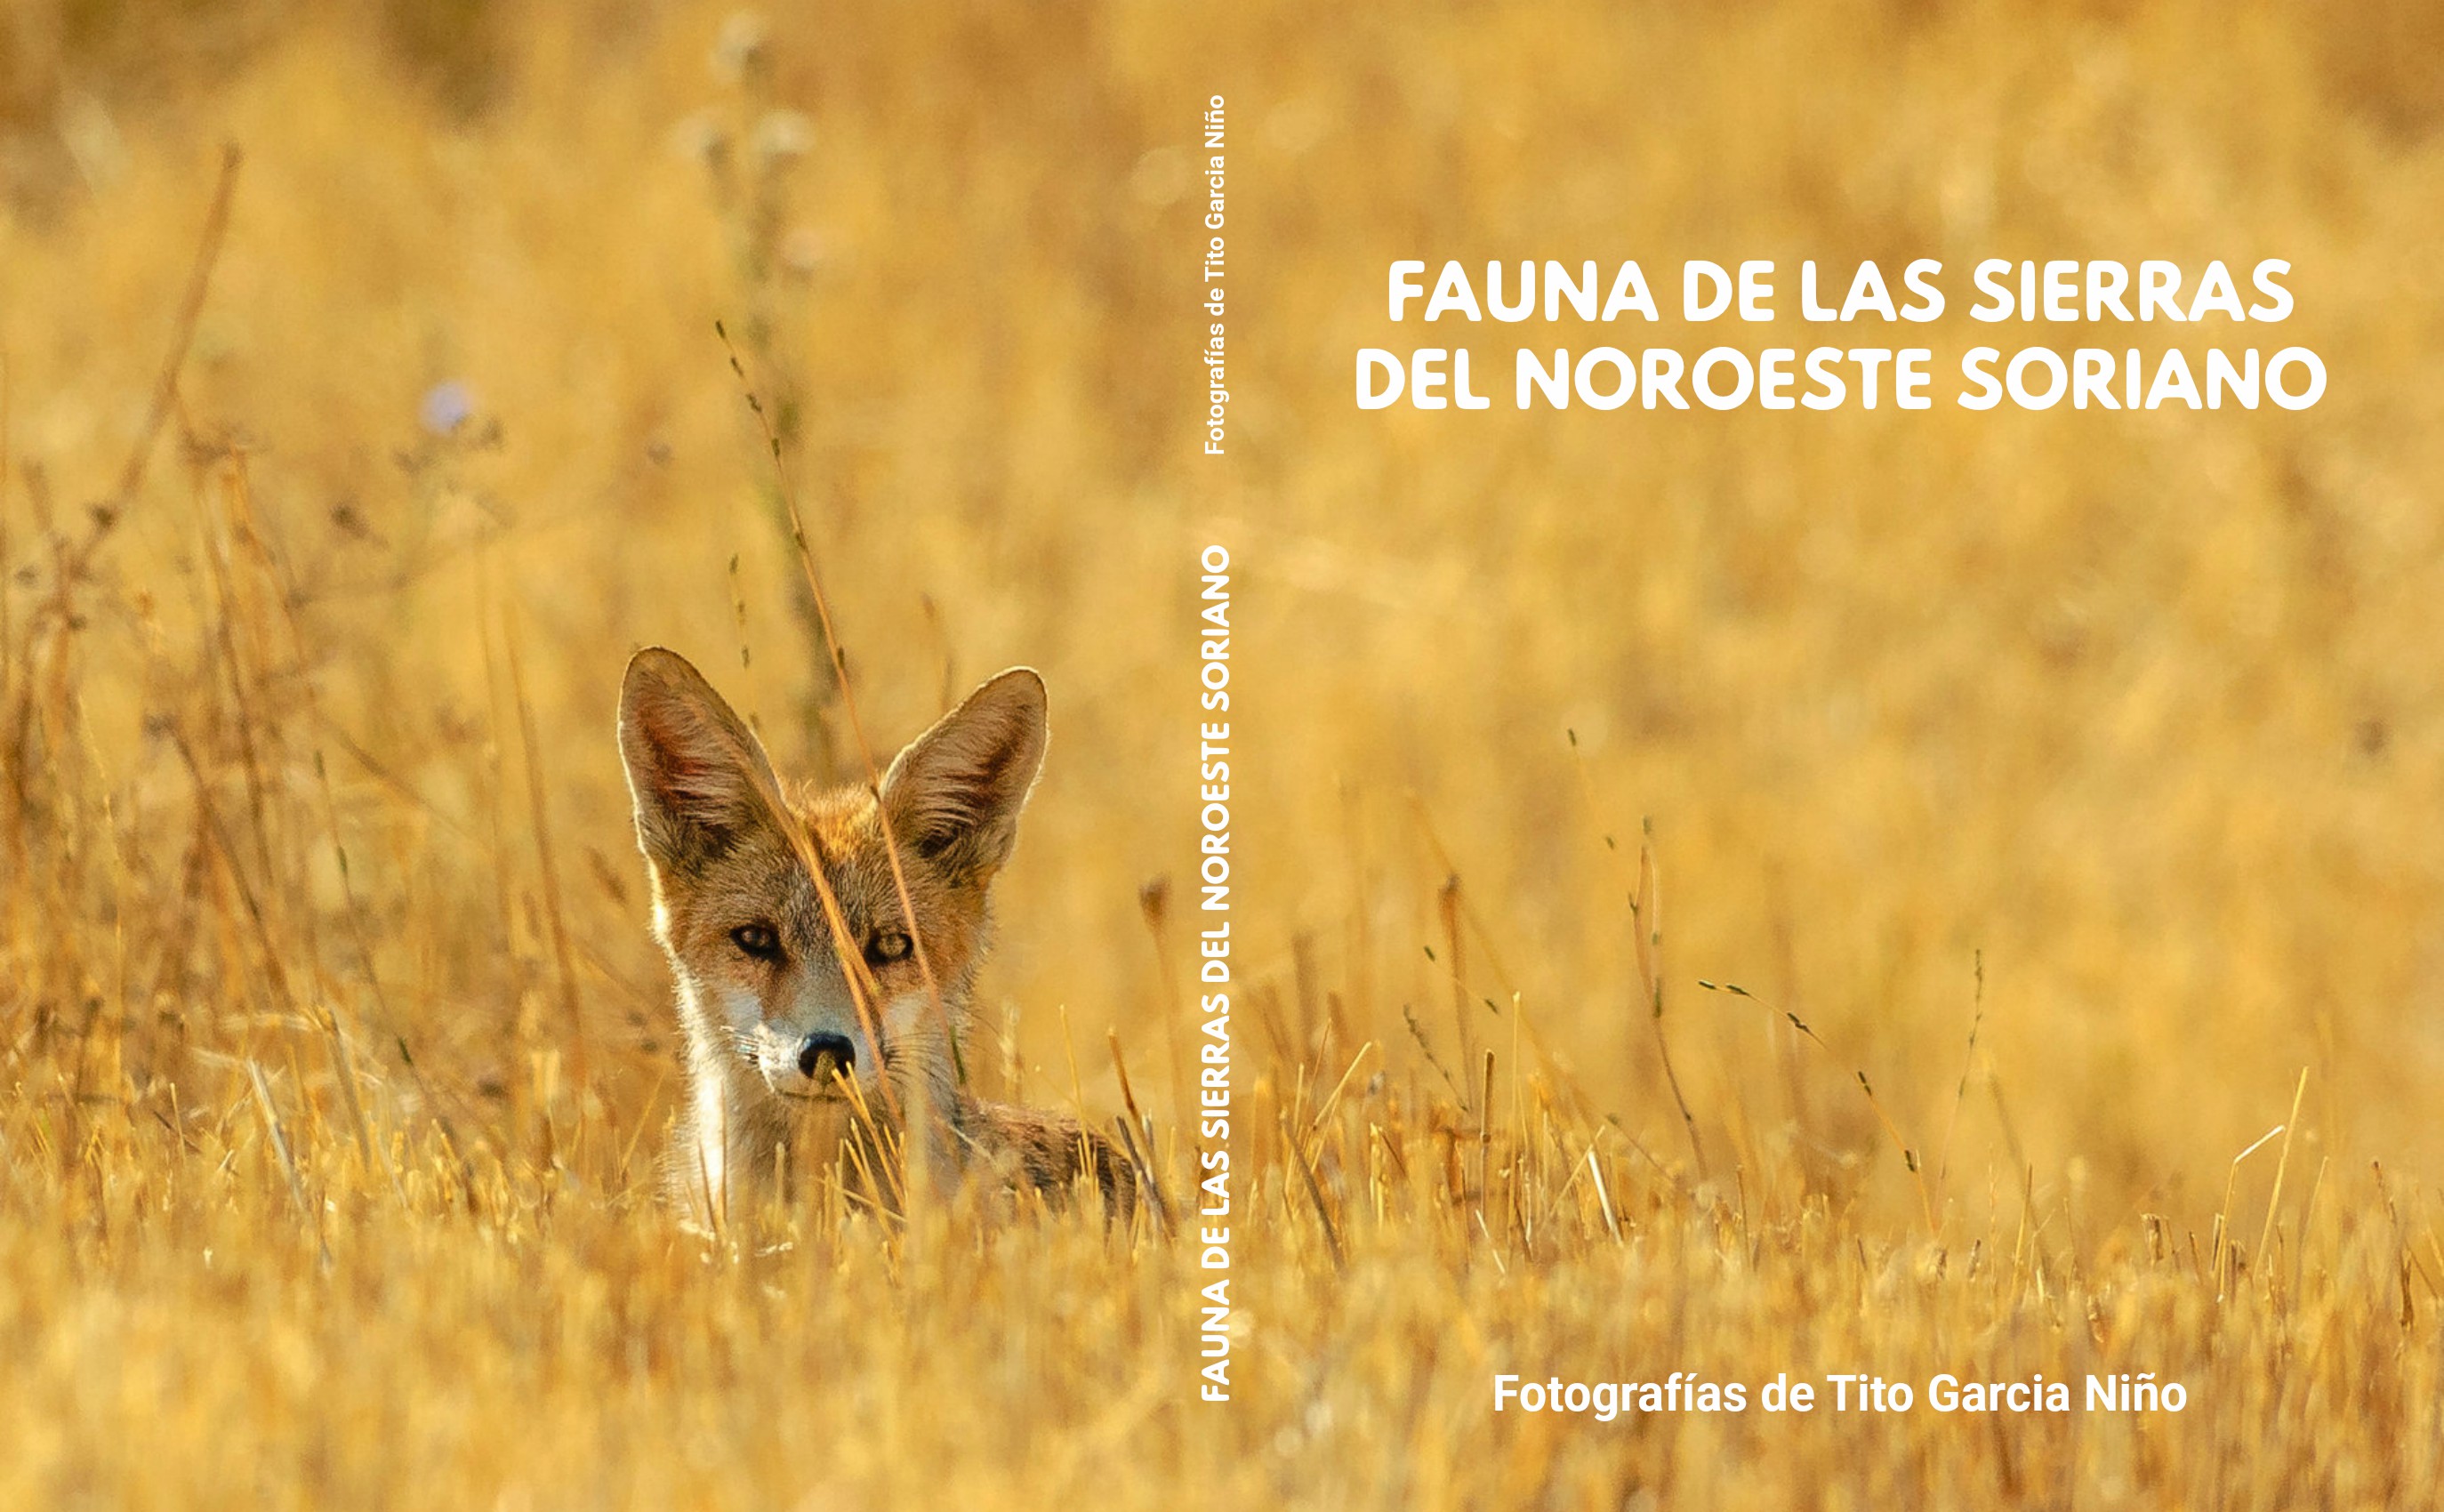 Fauna de las Sierras del Noroeste Soriano. Fotografías de Tito Garcia Niño.